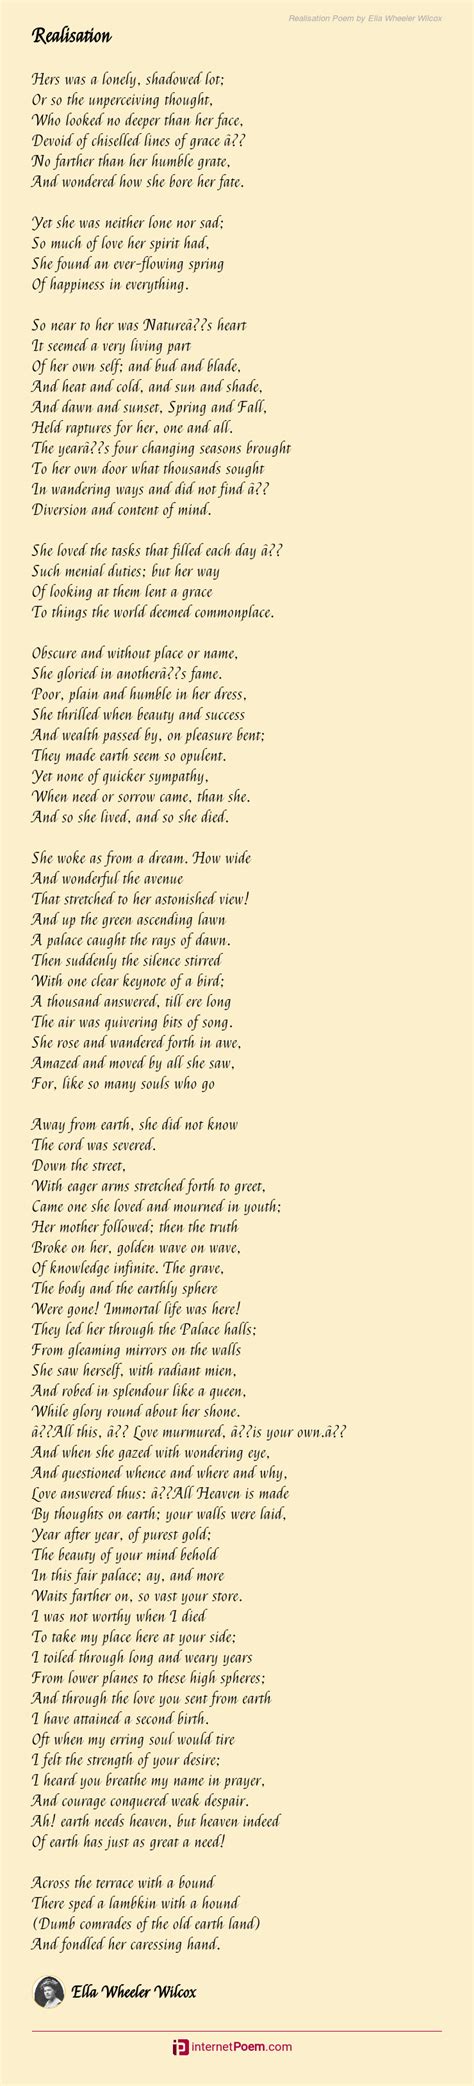 Realisation Poem by Ella Wheeler Wilcox